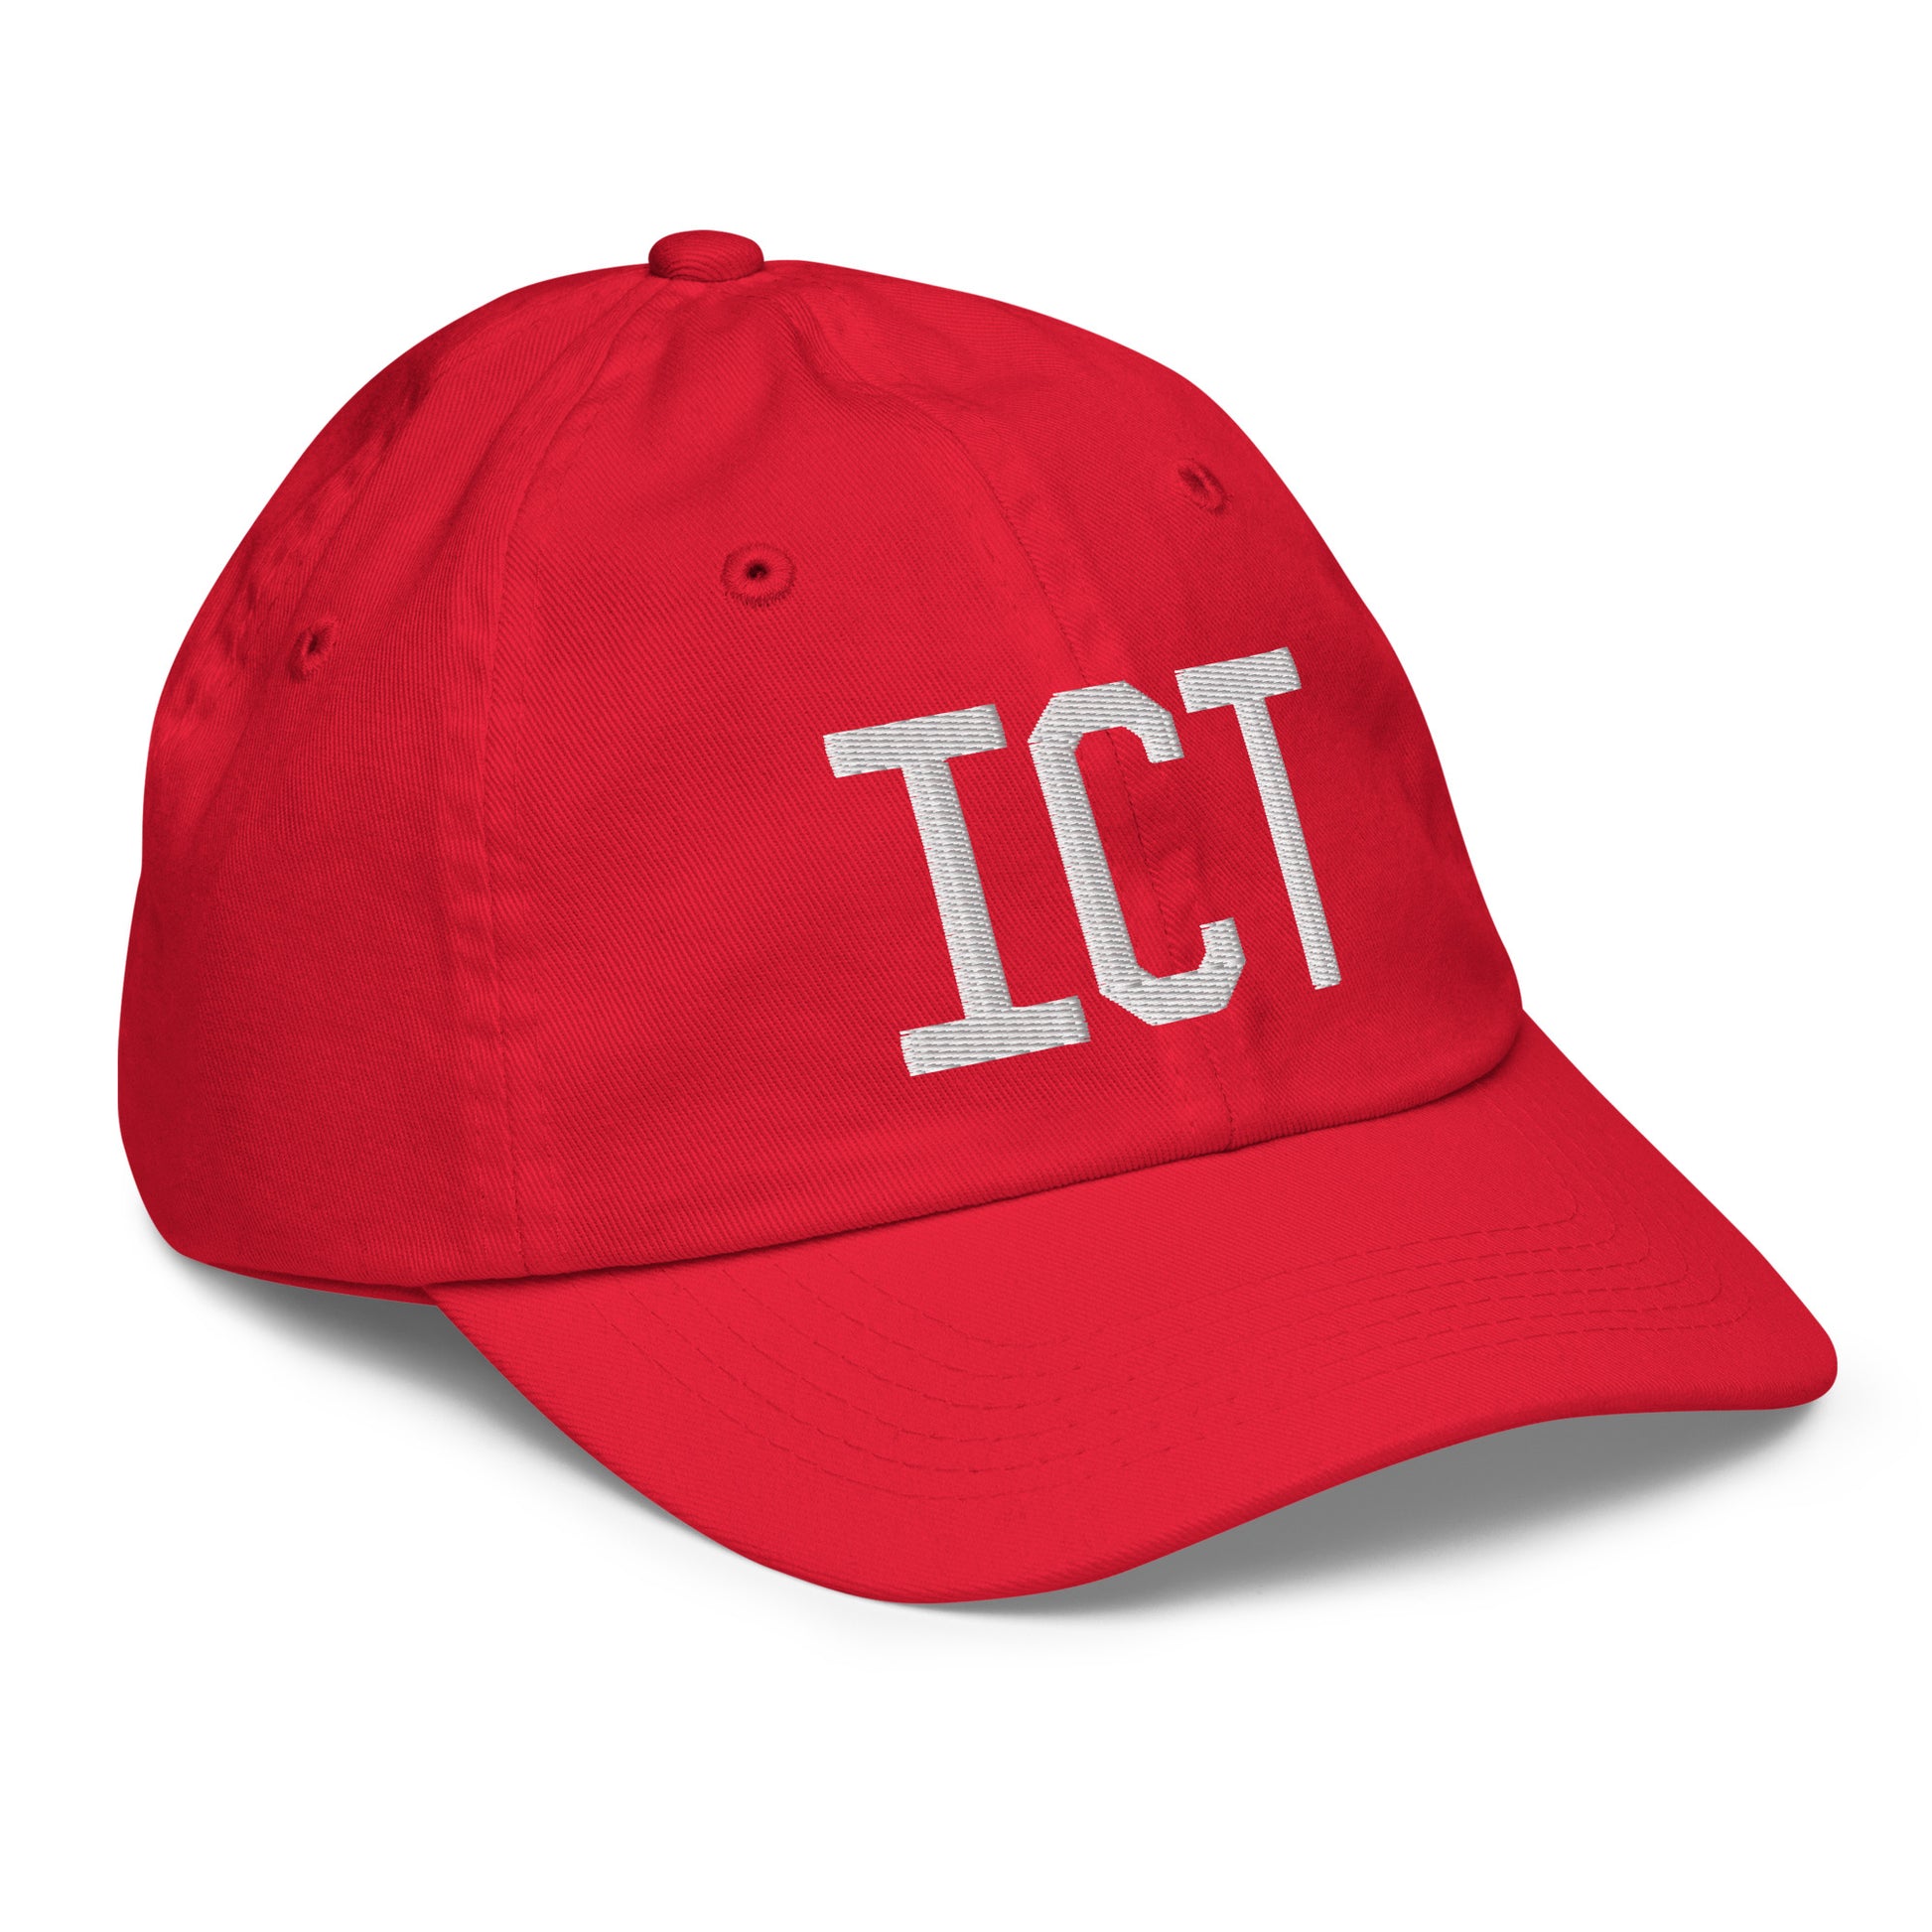 Airport Code Kid's Baseball Cap - White • ICT Wichita • YHM Designs - Image 18